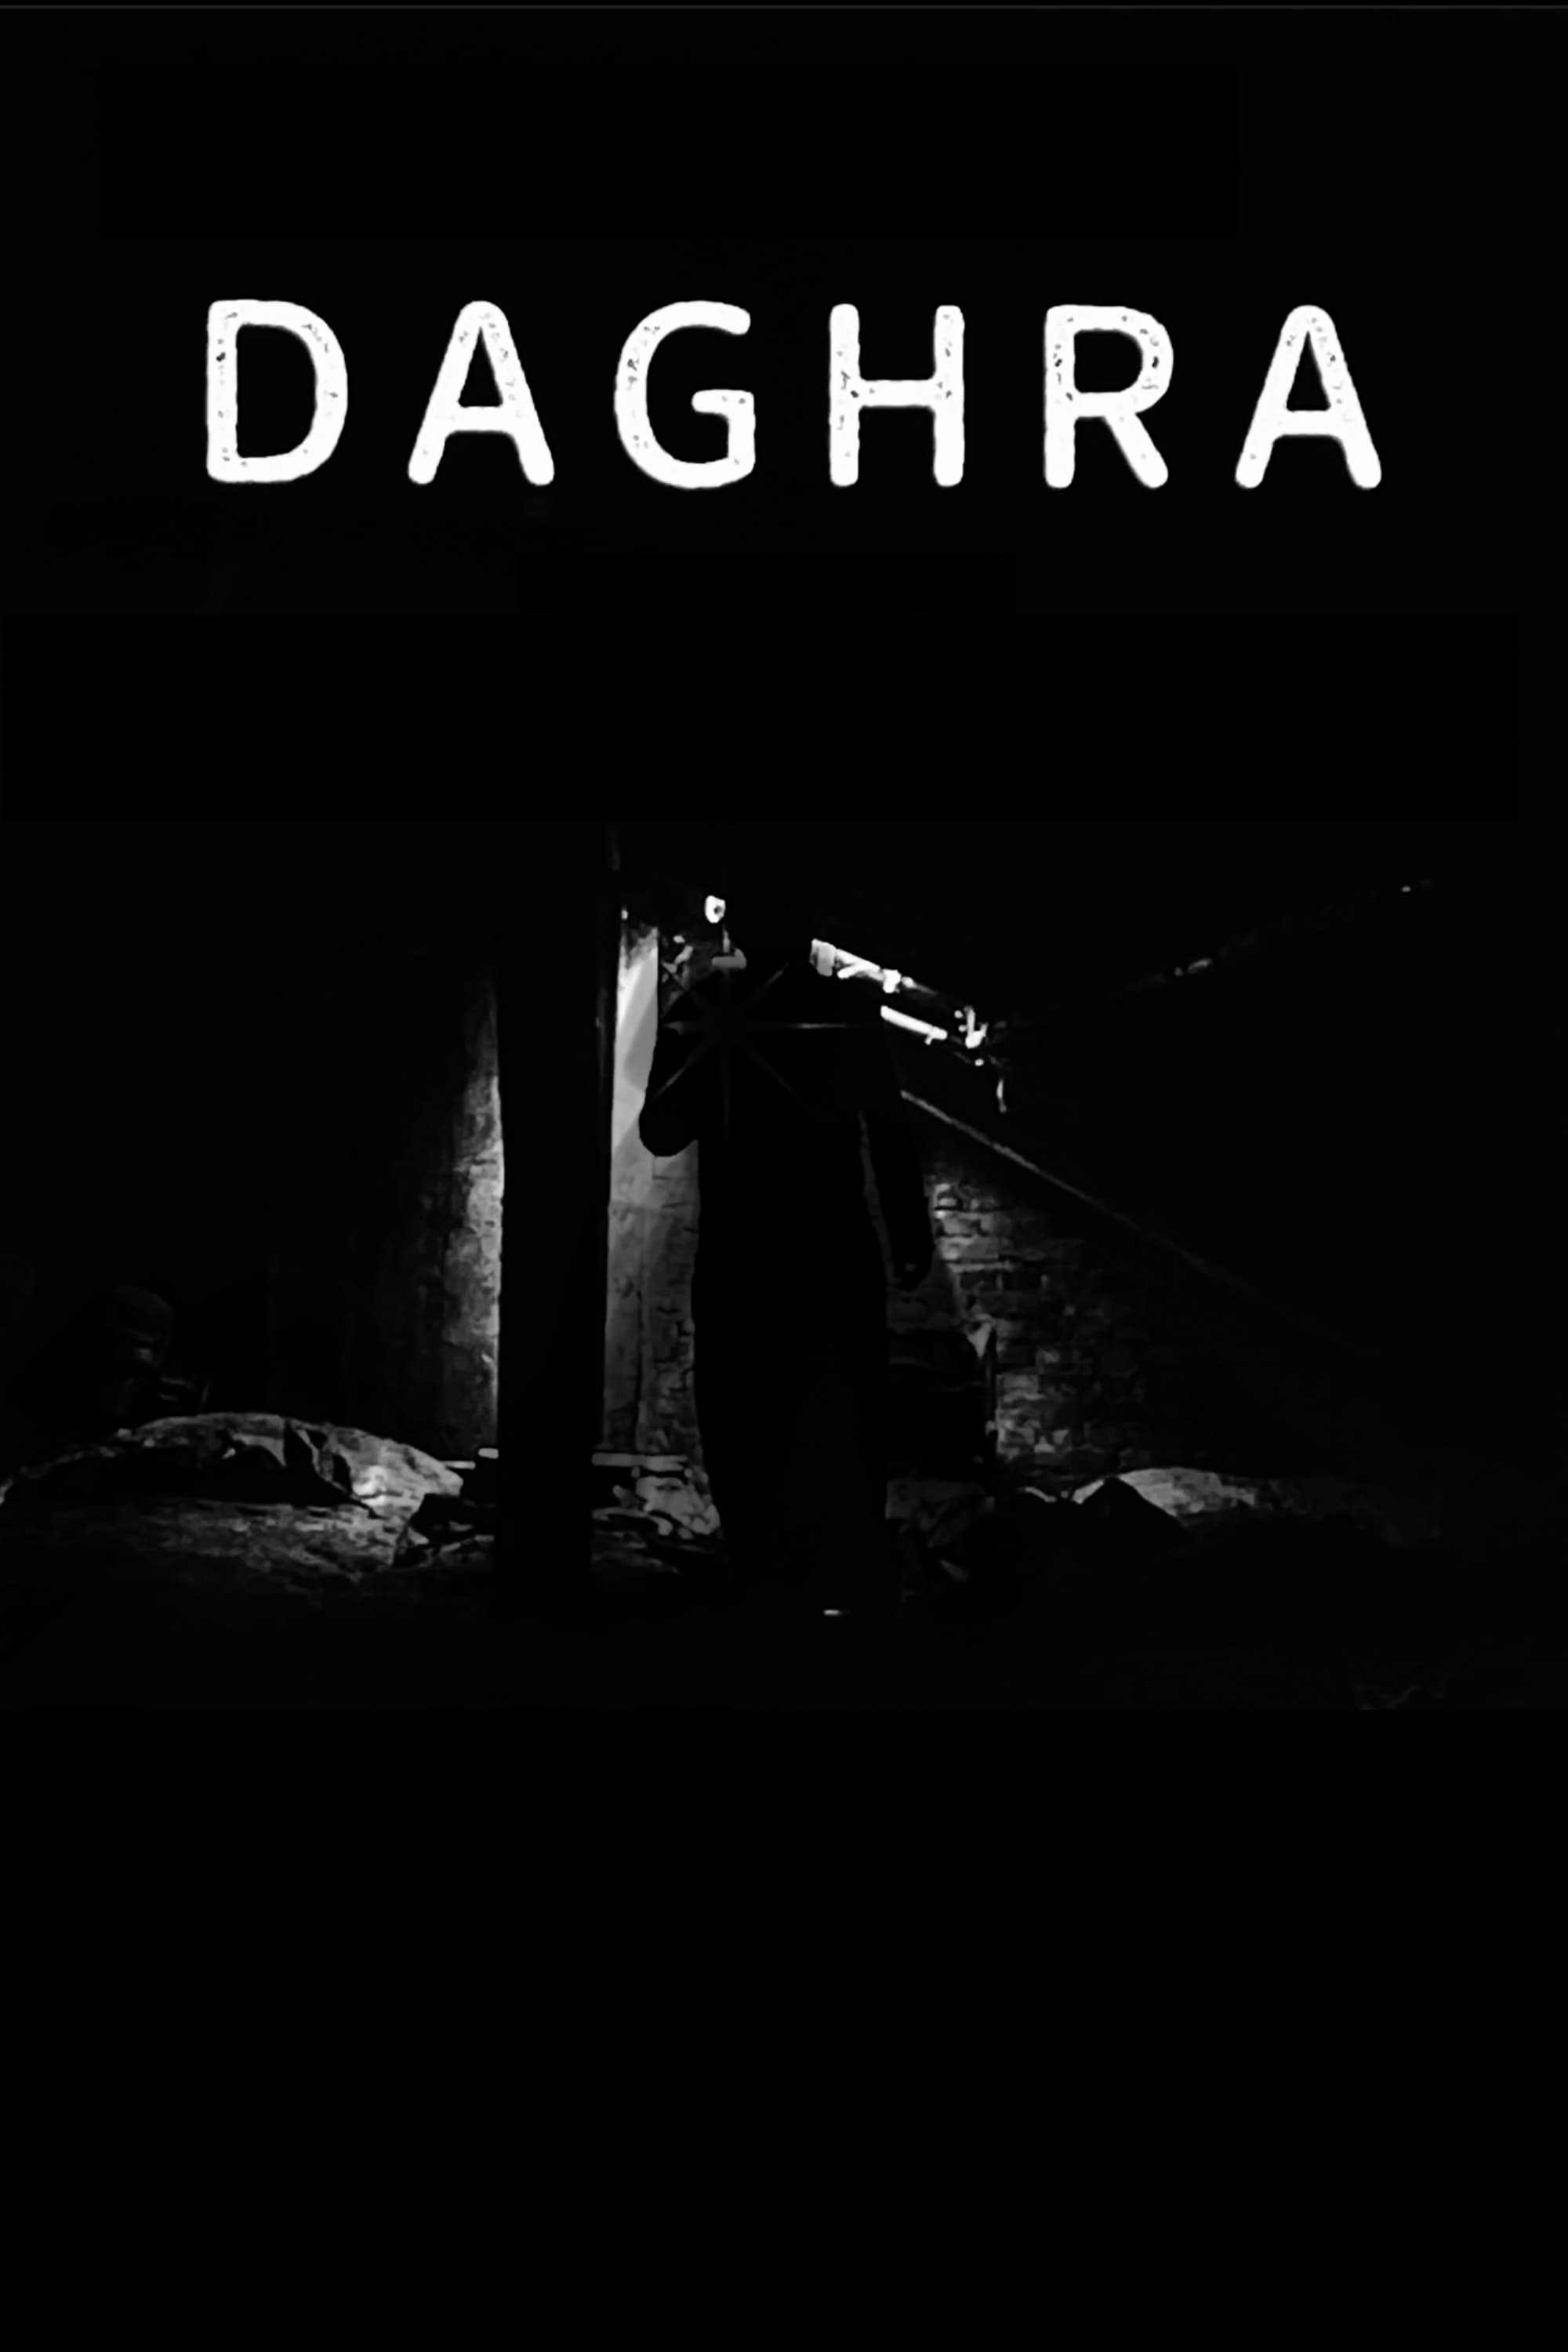 Daghra